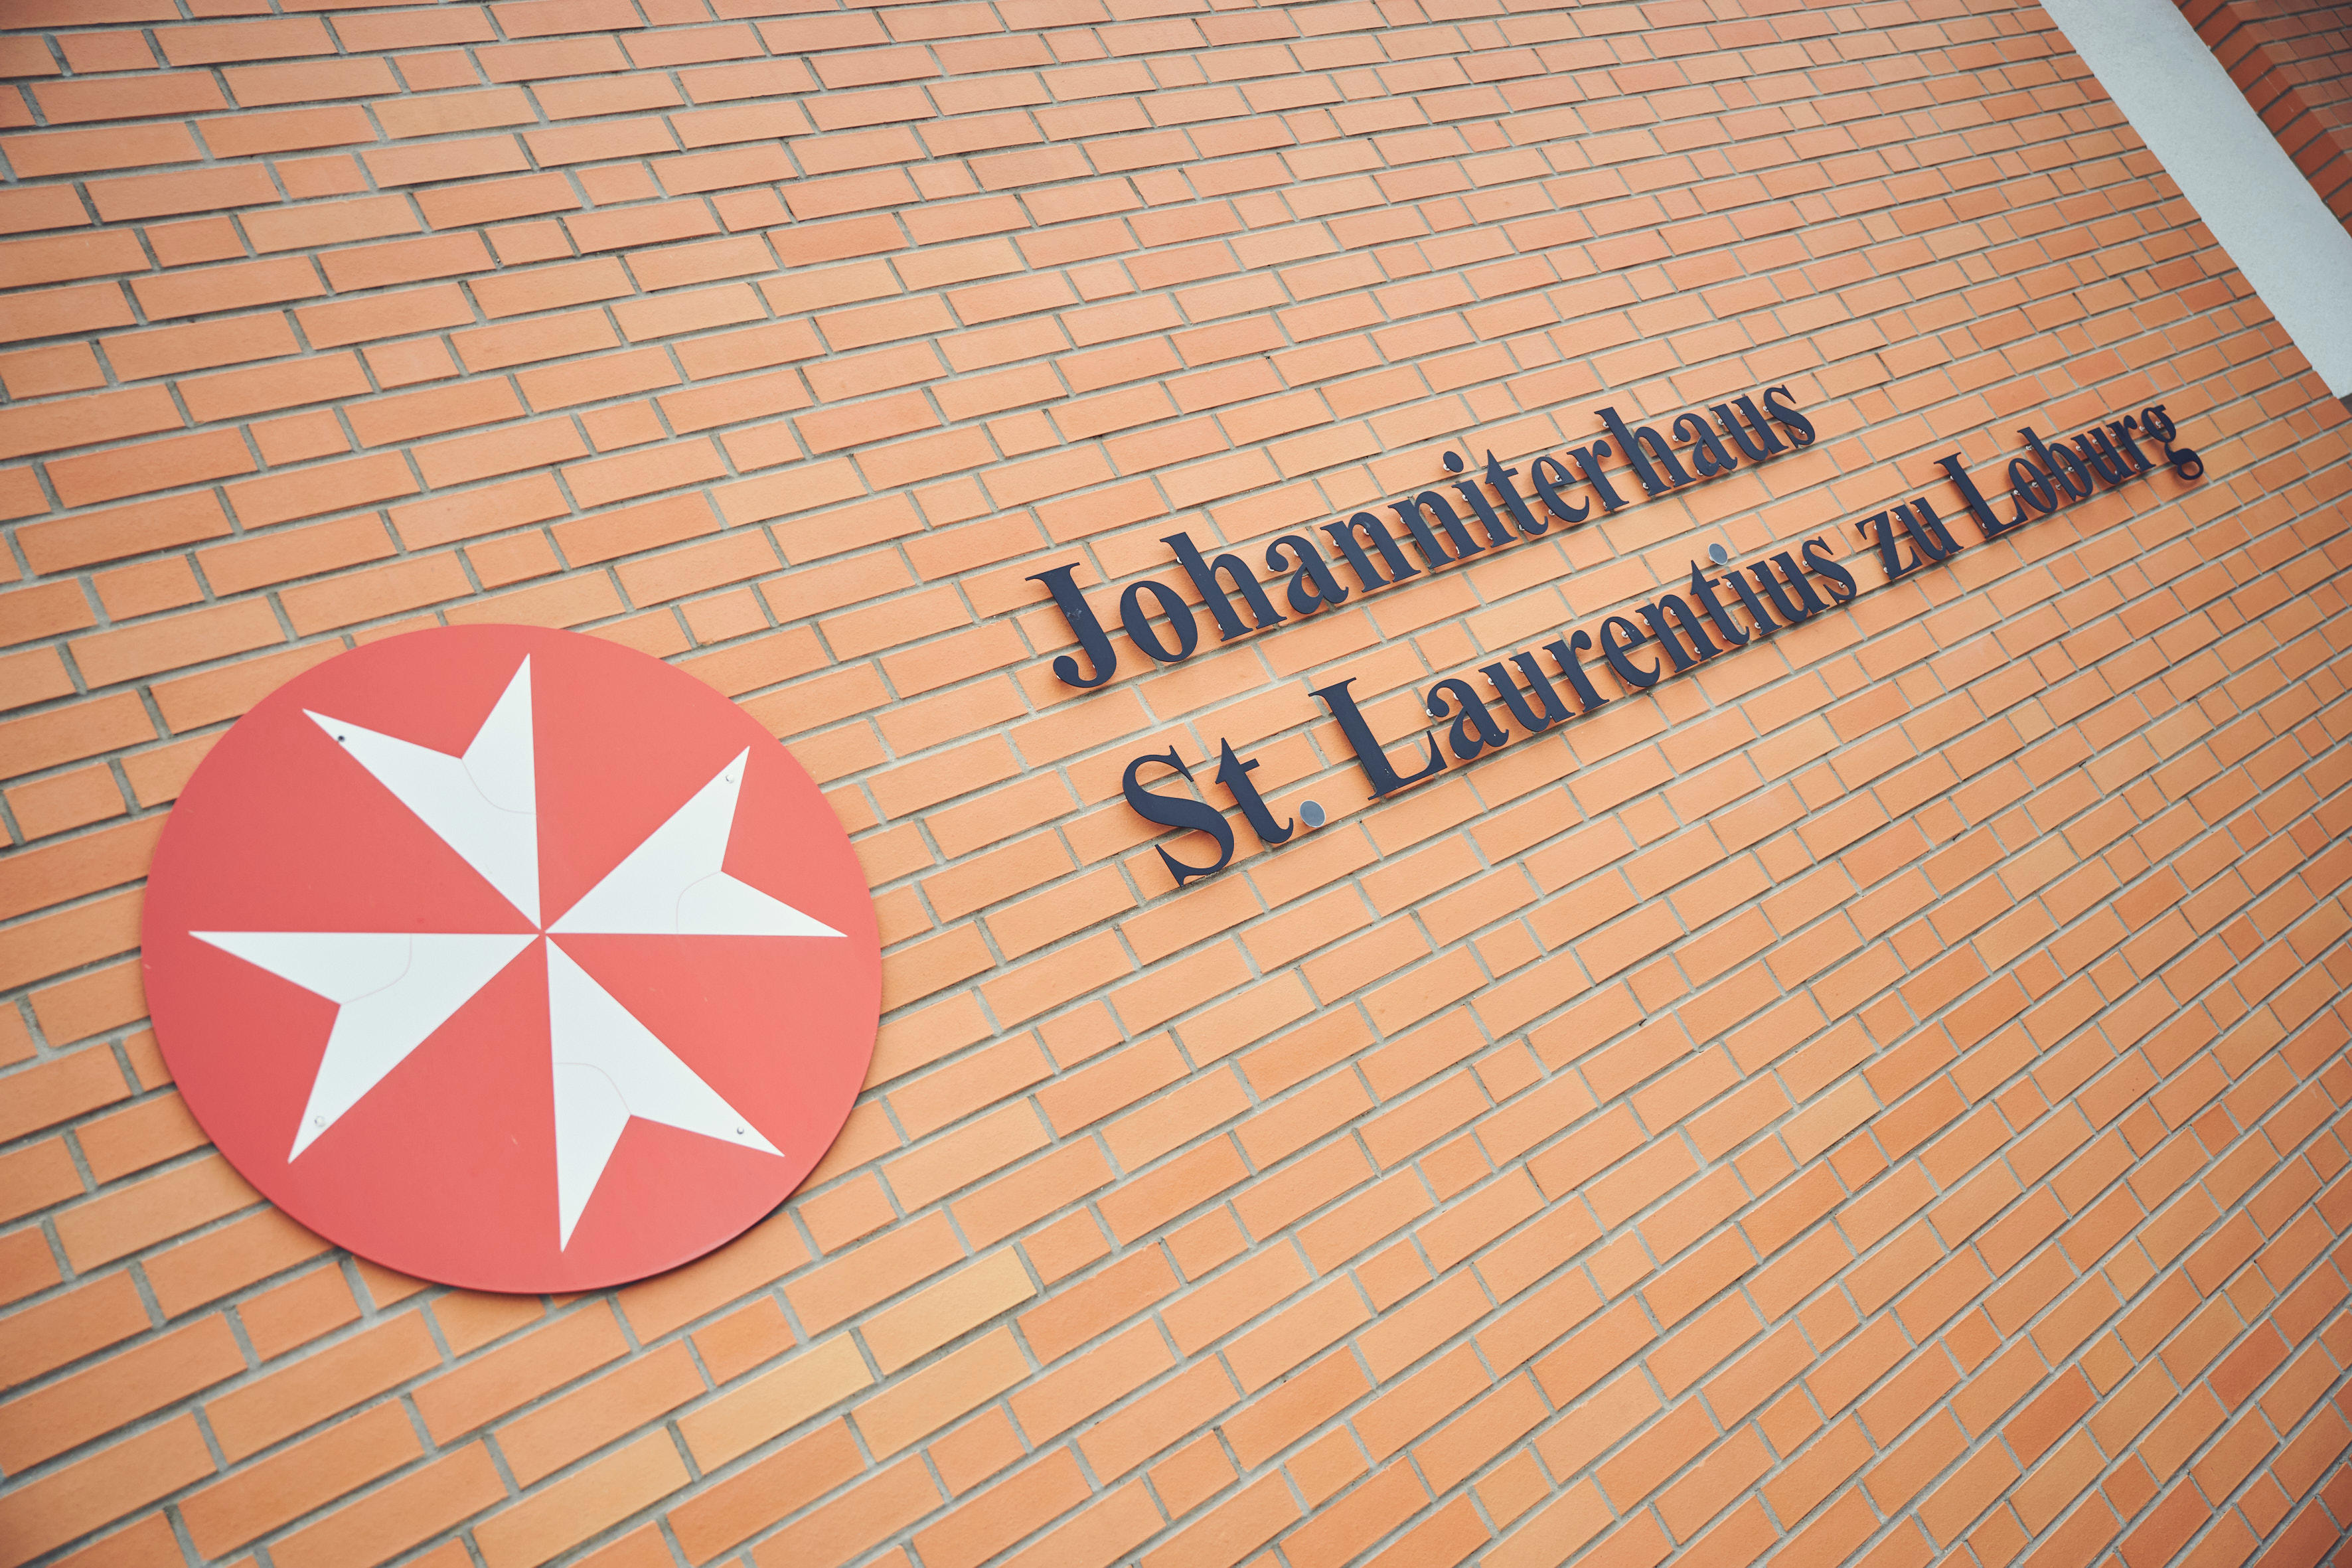 Bilder Johanniterhaus St. Laurentius zu Loburg